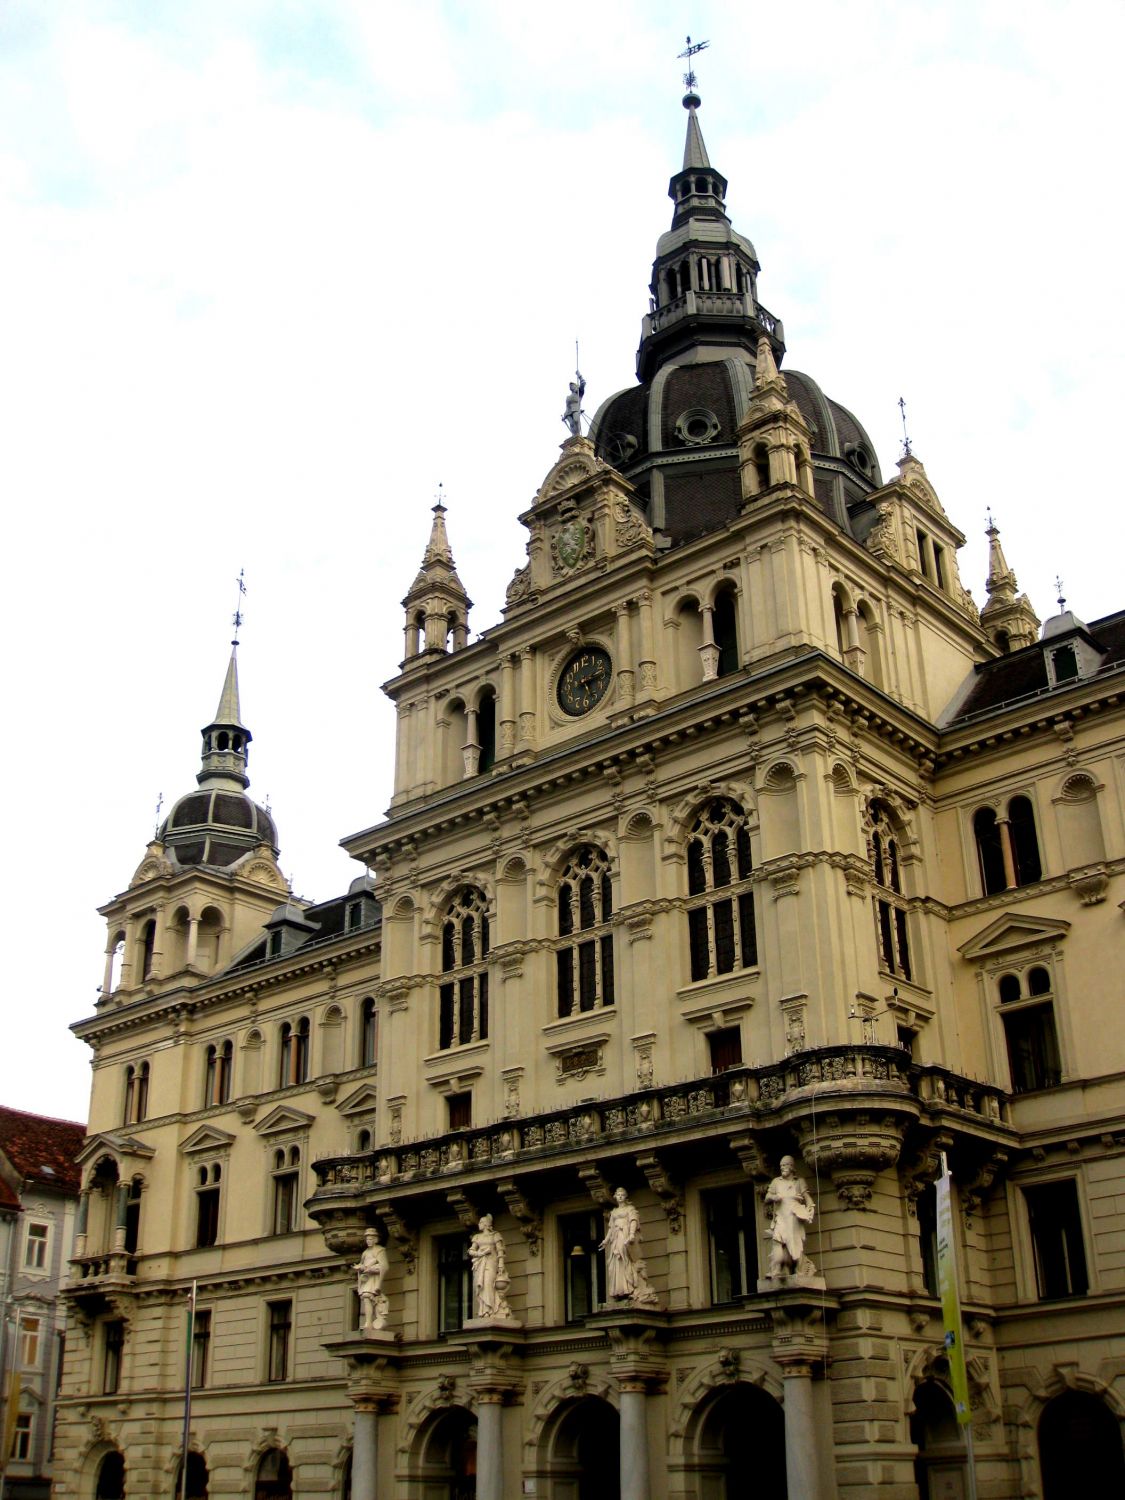 Rathaus Graz, ein Teil der Fassade